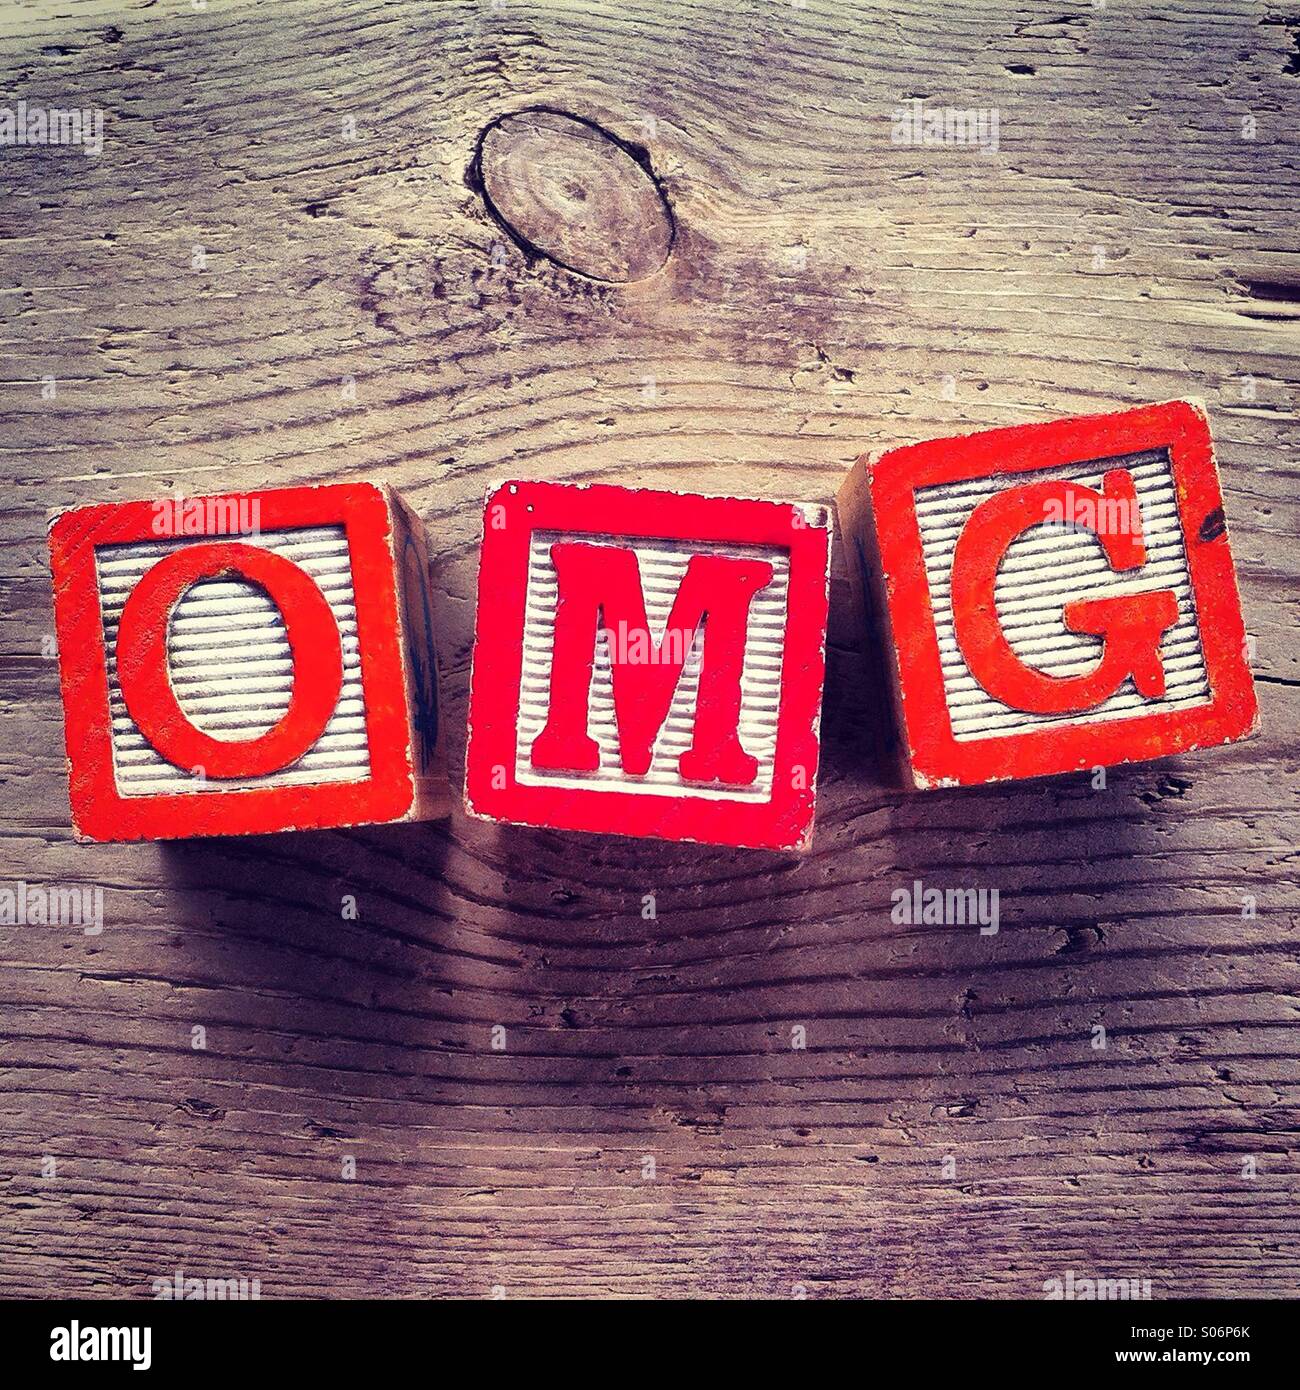 Es una foto de xilografías juguetes llegará la letra del alfabeto que se combinan entre sí para crear el acrónimo OMG Foto de stock